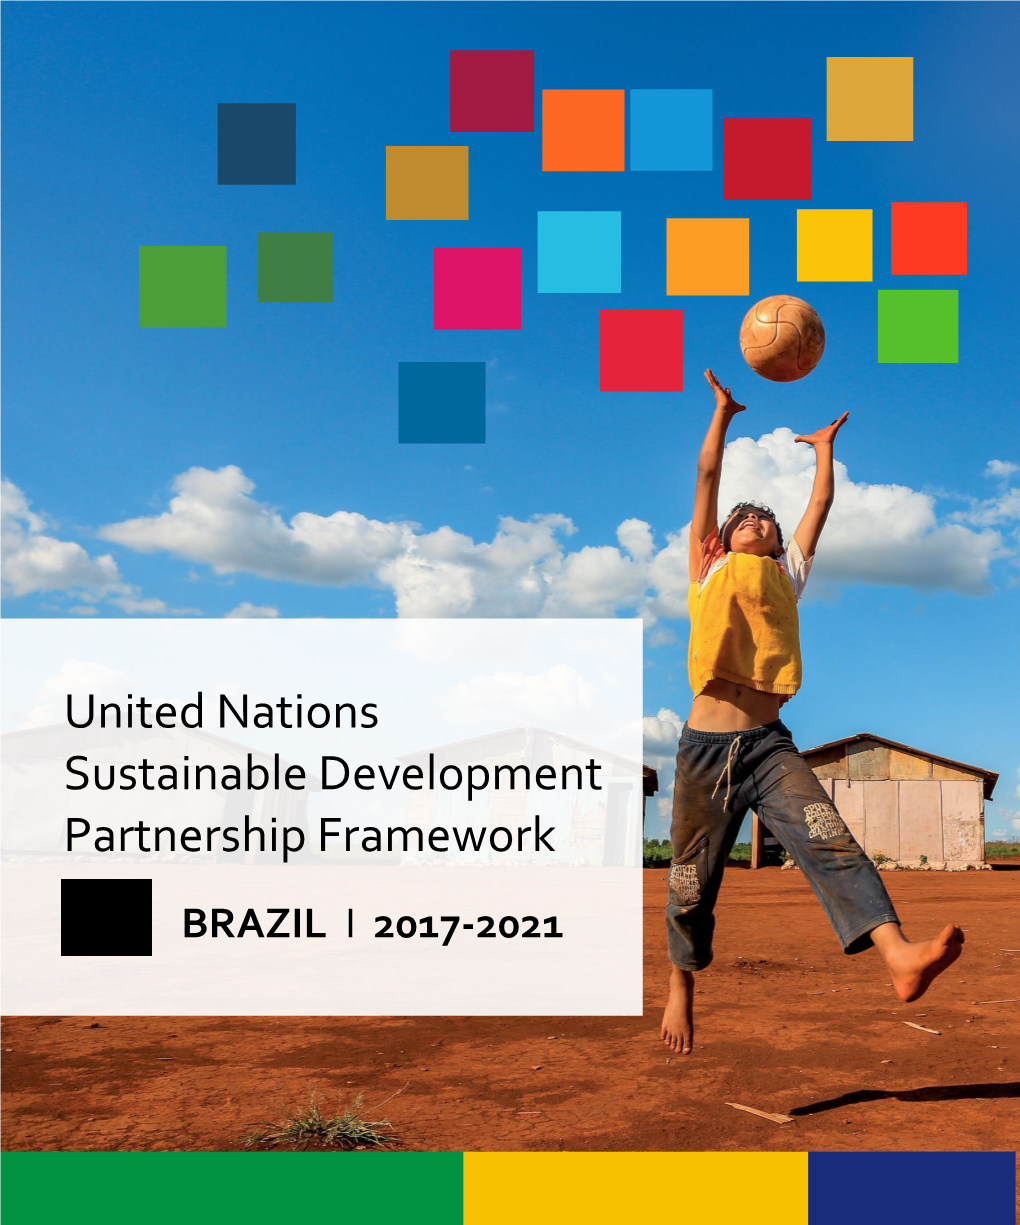 United Nations Sustainable Development Partnership Framework